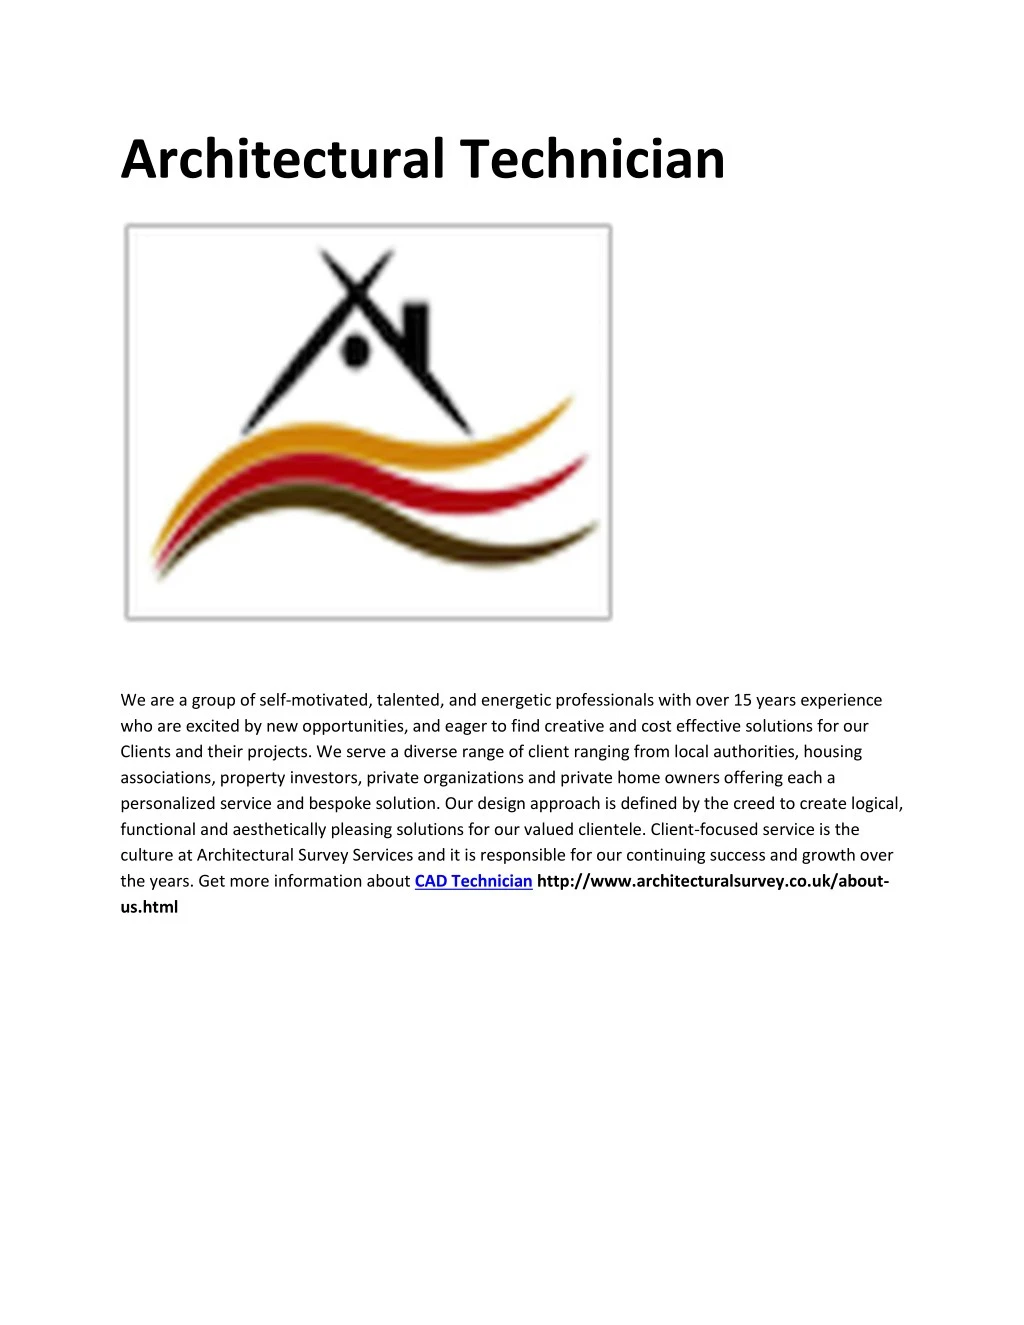 architectural technician